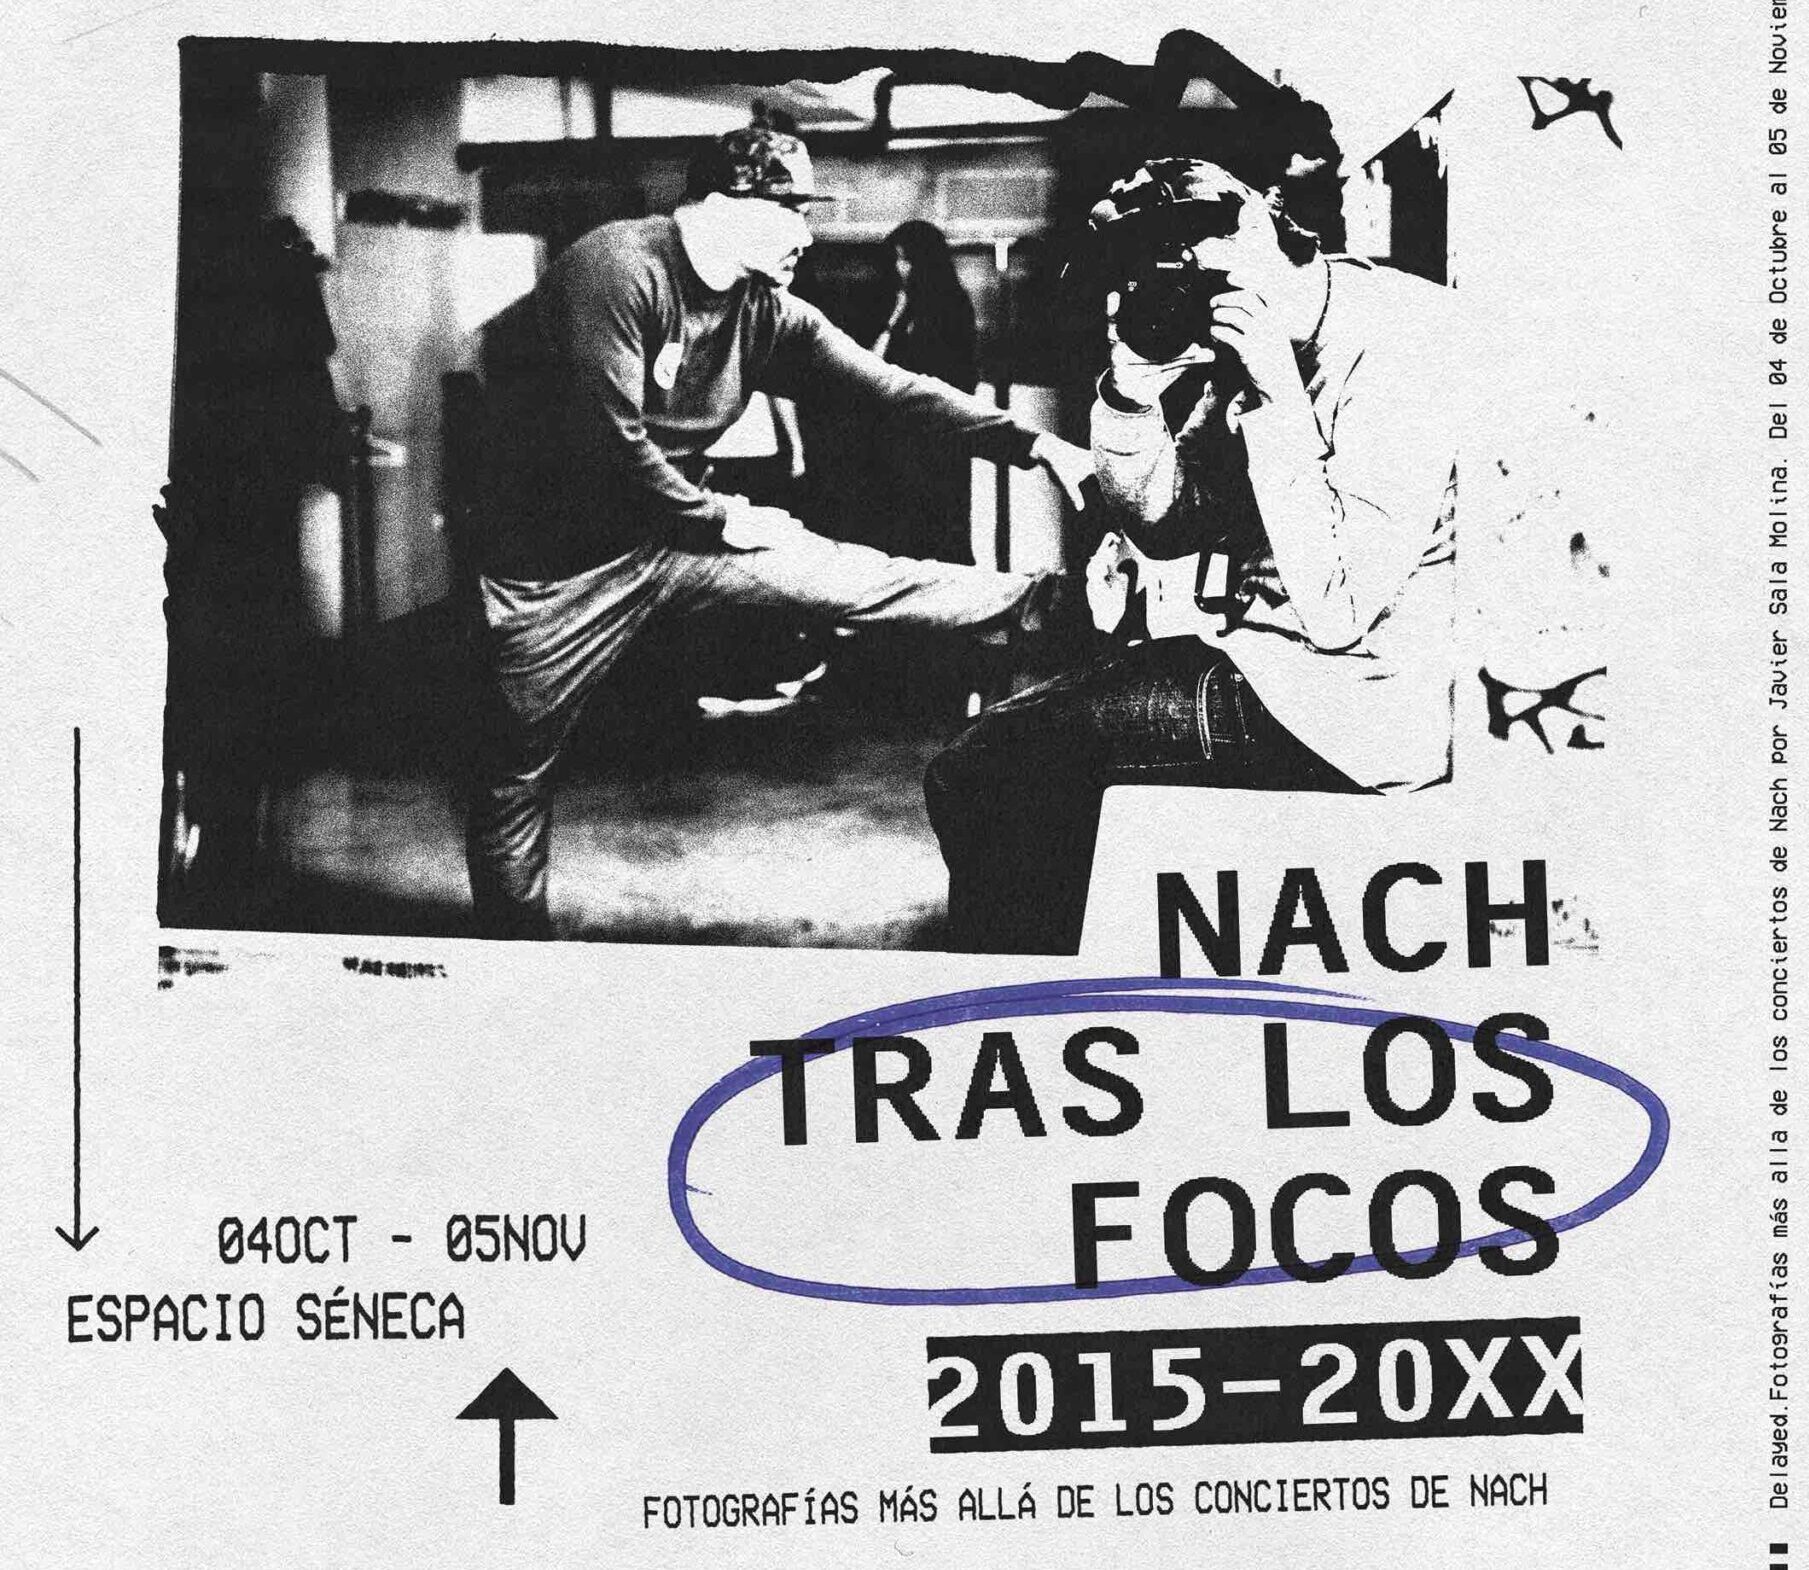 Espacio Séneca presenta la exposición “Nach tras los focos 2015-20XX”